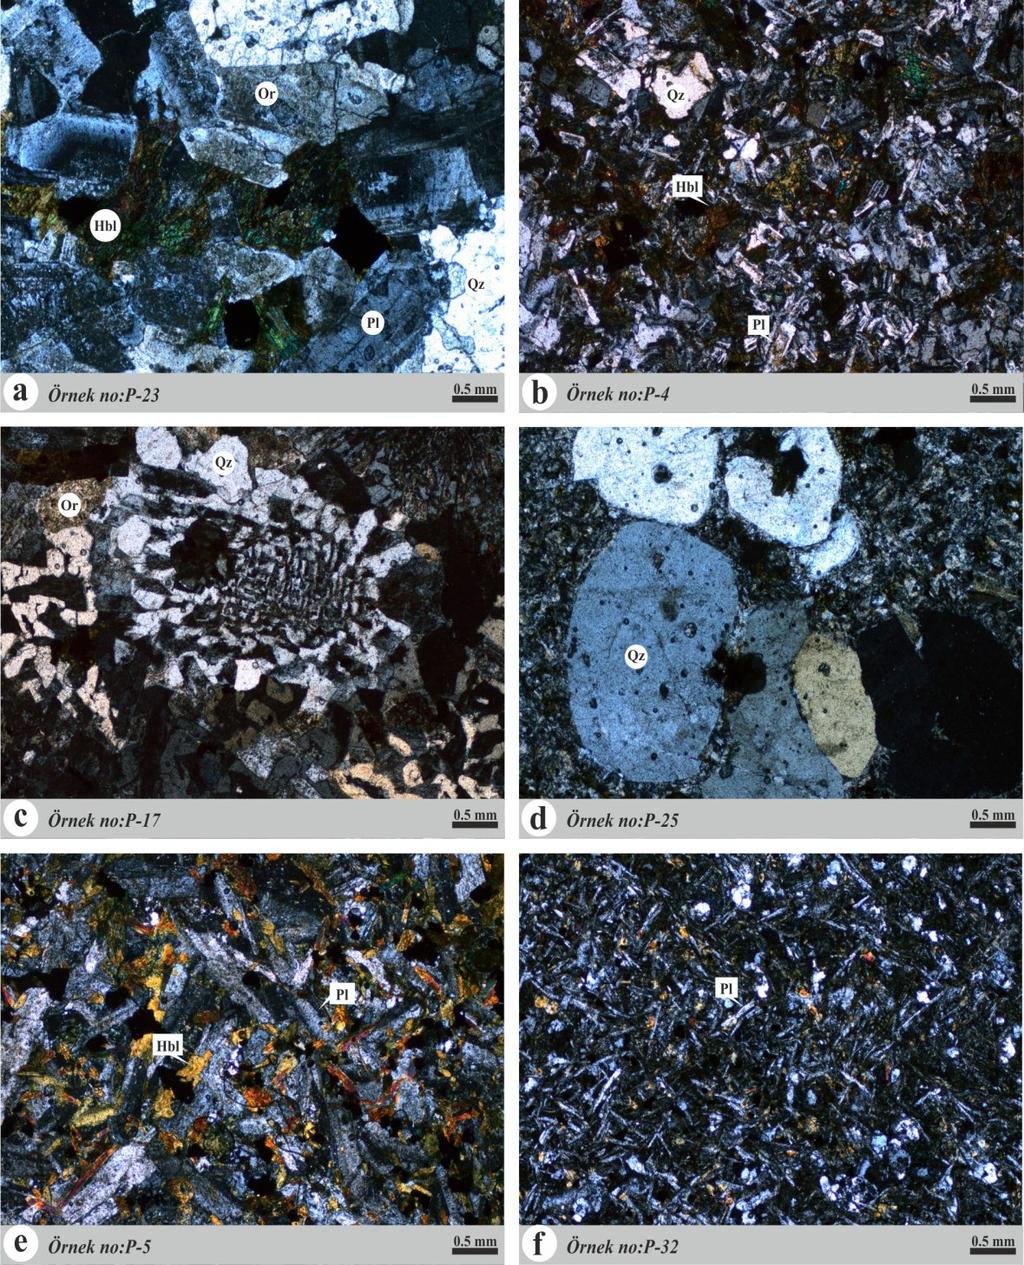 Utku BAĞCI, Hayati KOÇ, Murat CAMUZCUOĞLU, Musa ALPASLAN Şekil 5. Magmatik komplekse ait kayaçların mikroskobik görüntüleri.